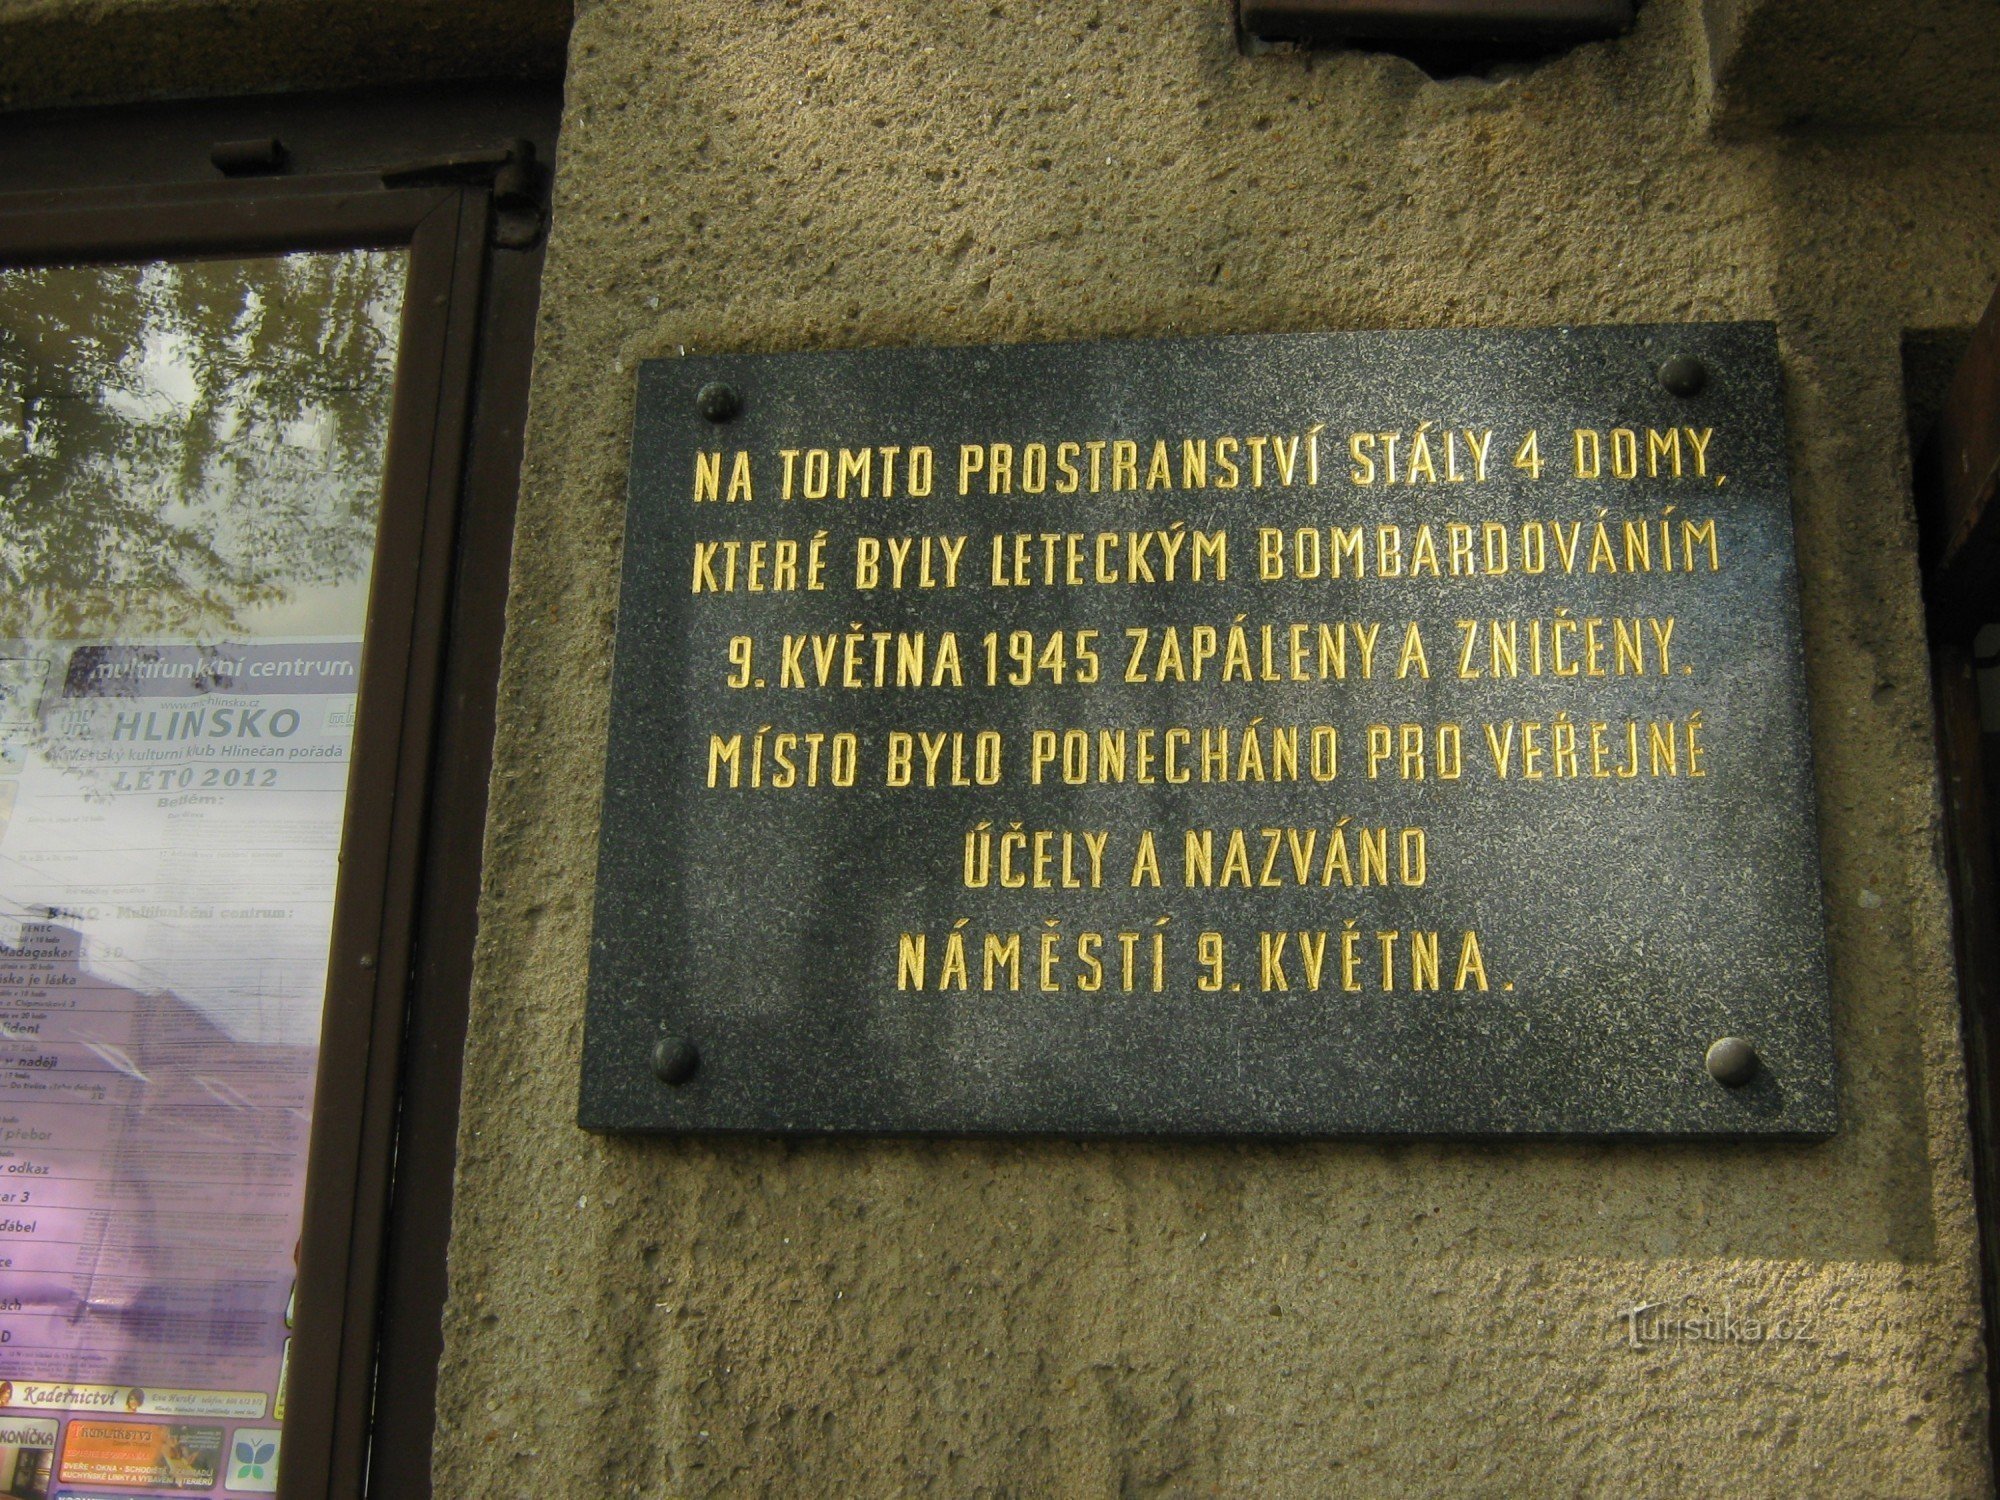 Memorial plaque of the bombing in Svratka